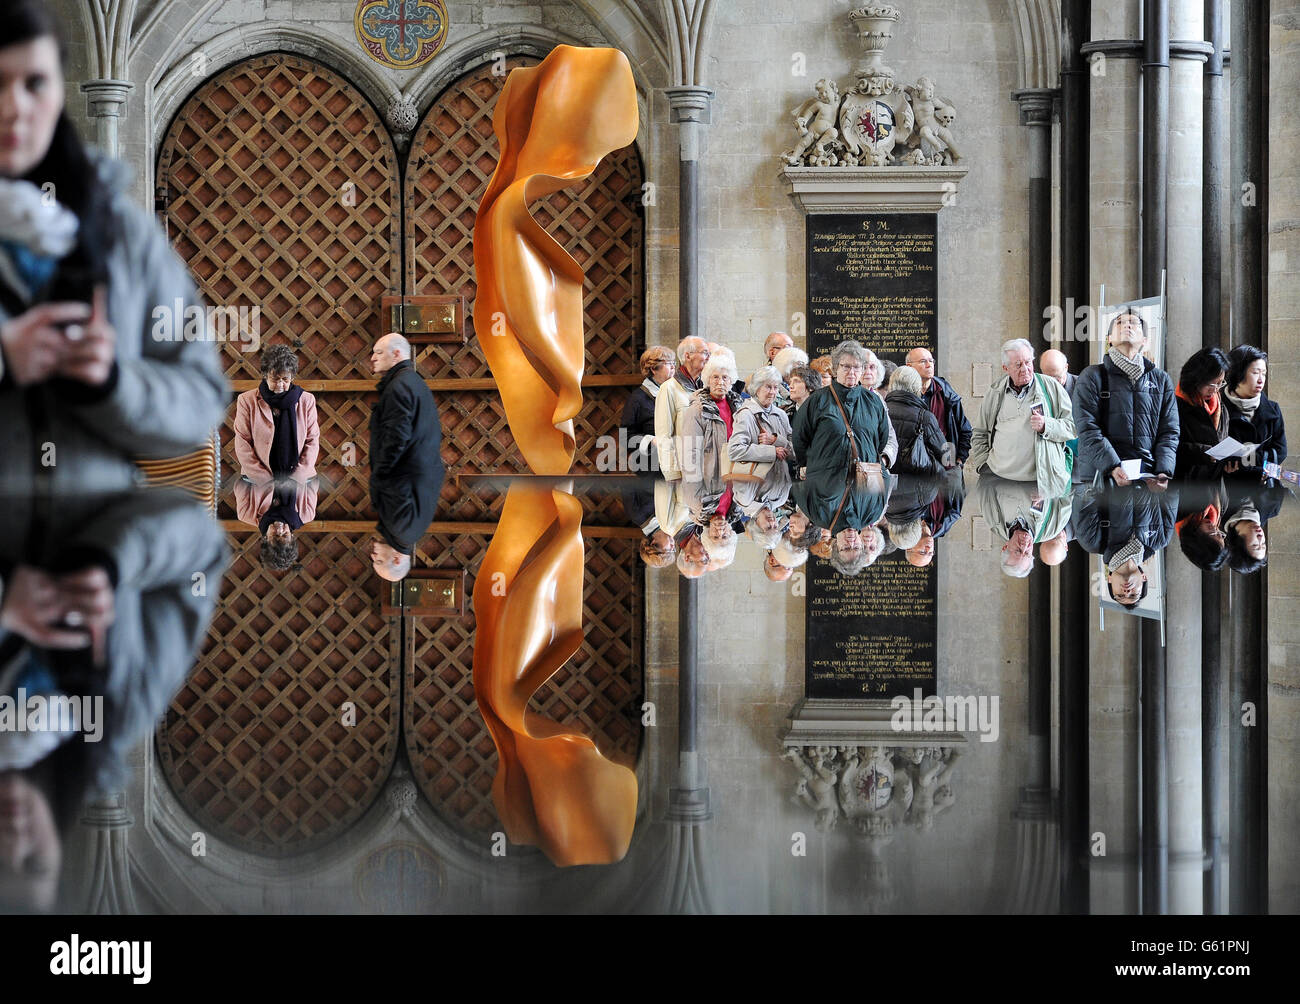 Eine Bronzeskulptur namens Flight der Künstlerin Helaine Blumenfeld und ihre Spiegelung im Taufbecken im Dom von Salisbury, der Teil einer Ausstellung ihrer im Dom installierten Arbeiten ist. Stockfoto